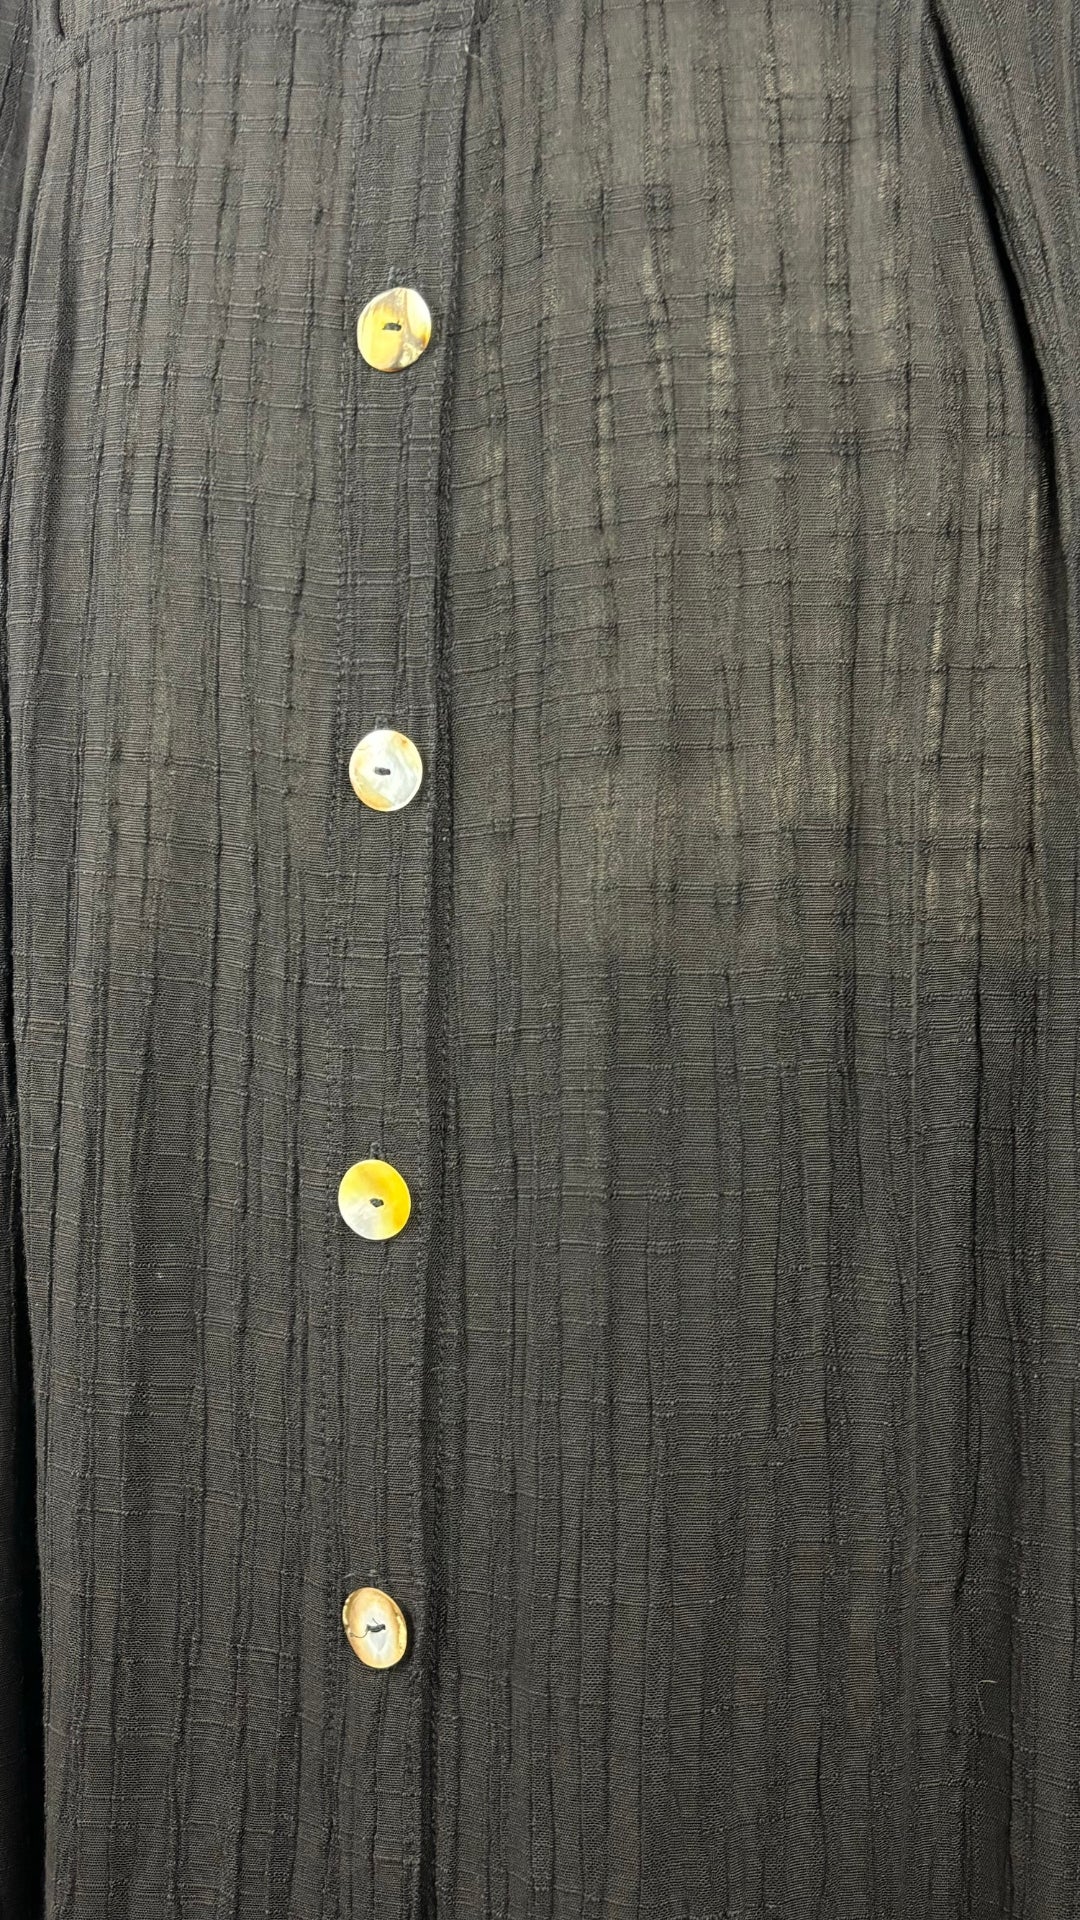 Robe longue noire texturée en mélange de lin Kaliyana, taille m/l. Vue des boutons au dos.